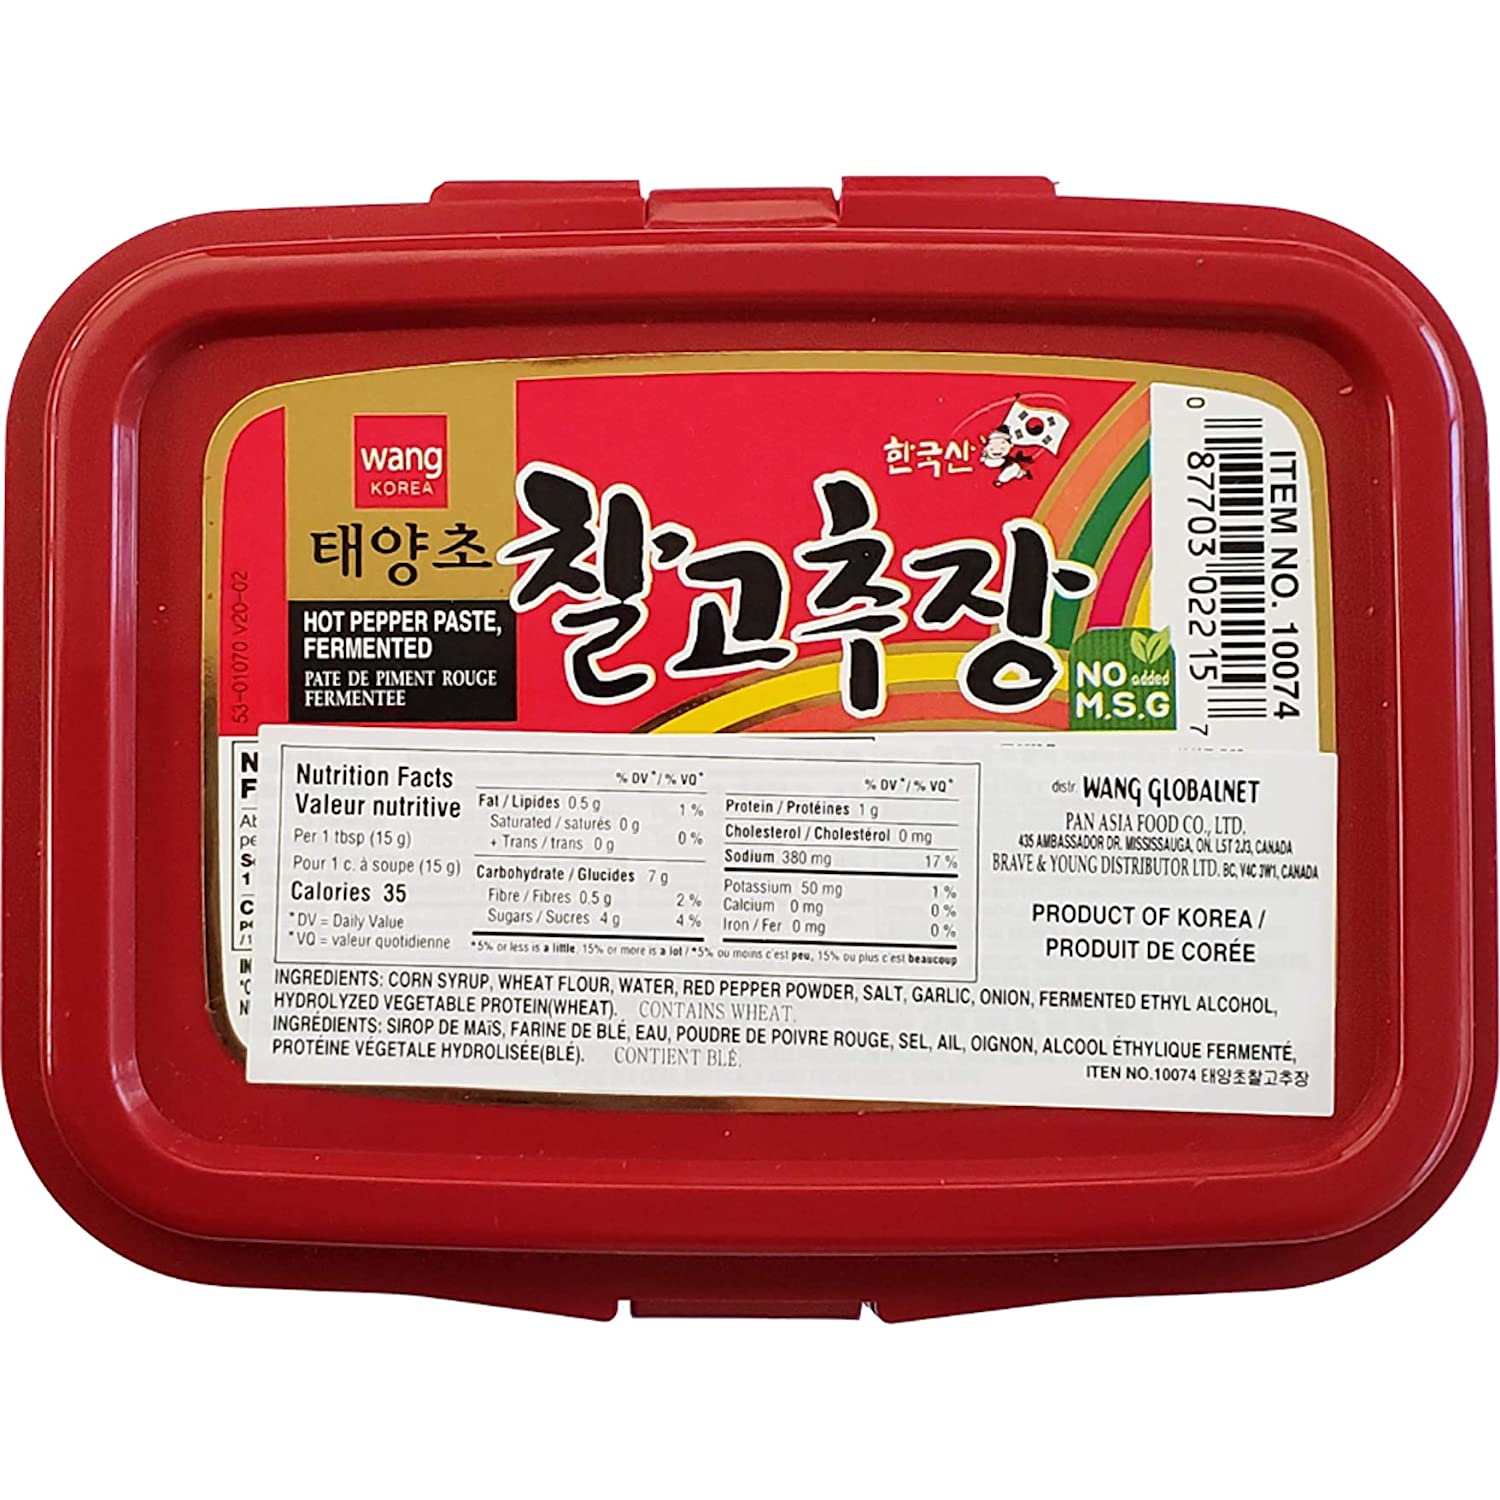 Wang Korea Hot Pepper Paste, Fermentado - 500g/17.6oz - 0